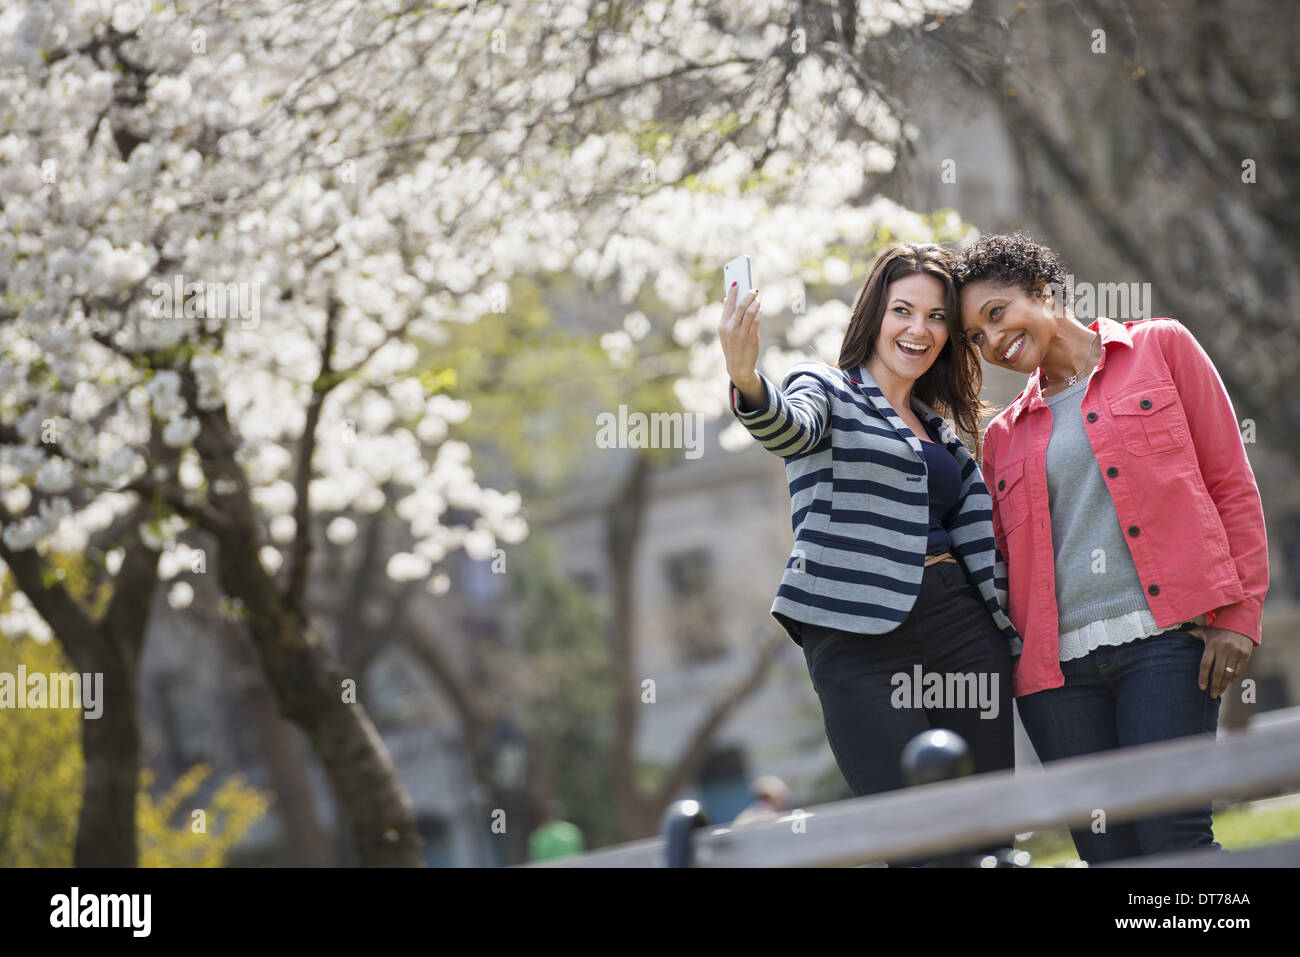 Frühlingszeit. Park in New York City. Eine junge Frau hält sich ein Telefon, ein Foto von sich und eine Begleitperson zu nehmen. Stockfoto